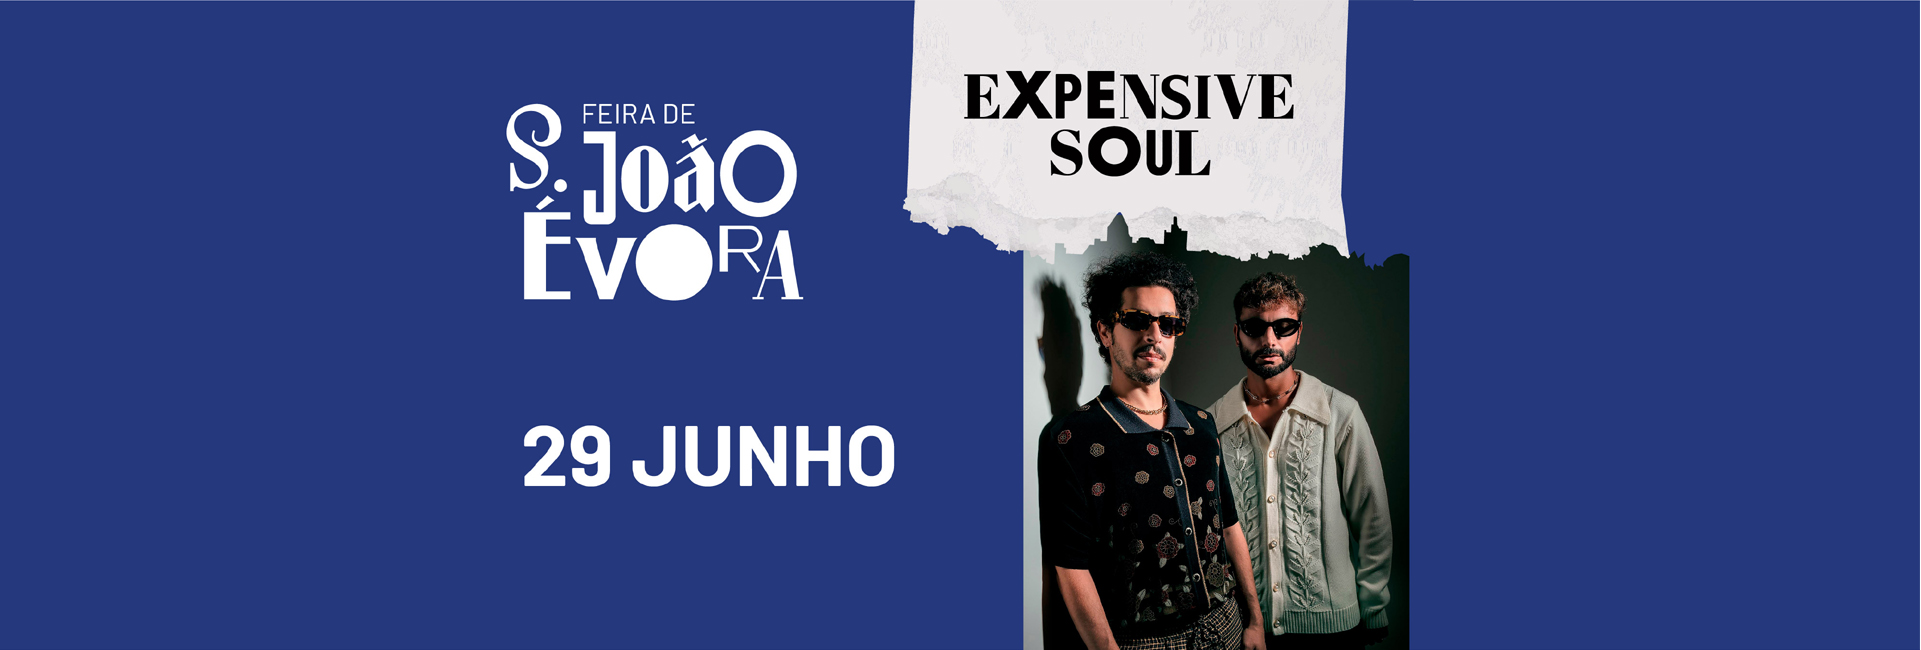 EXPENSIVE SOUL | Feira de S. João 2022